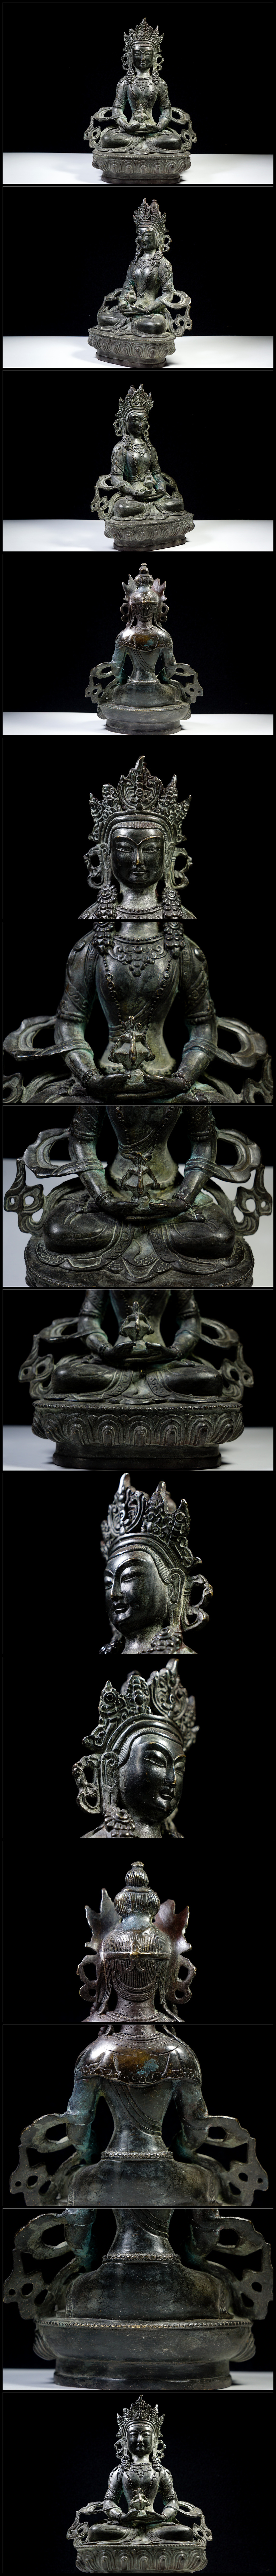 倉庫直送銅細工 チベット密教 無量寿菩薩造像高彫 無銘 鎮宅 開運置物 極上質 仏像